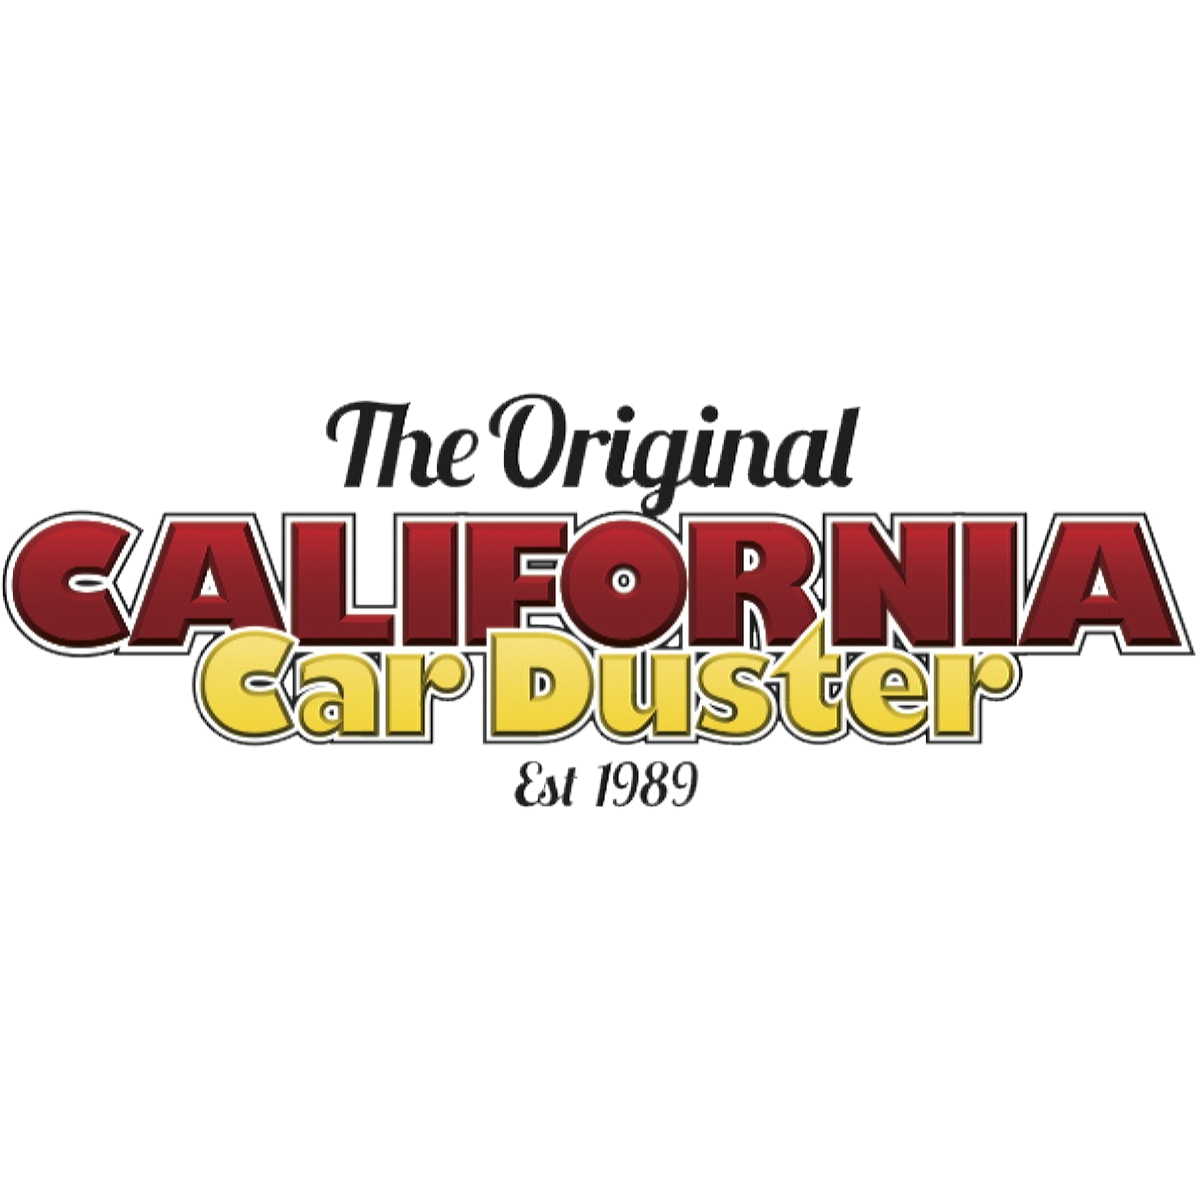 California Car Duster